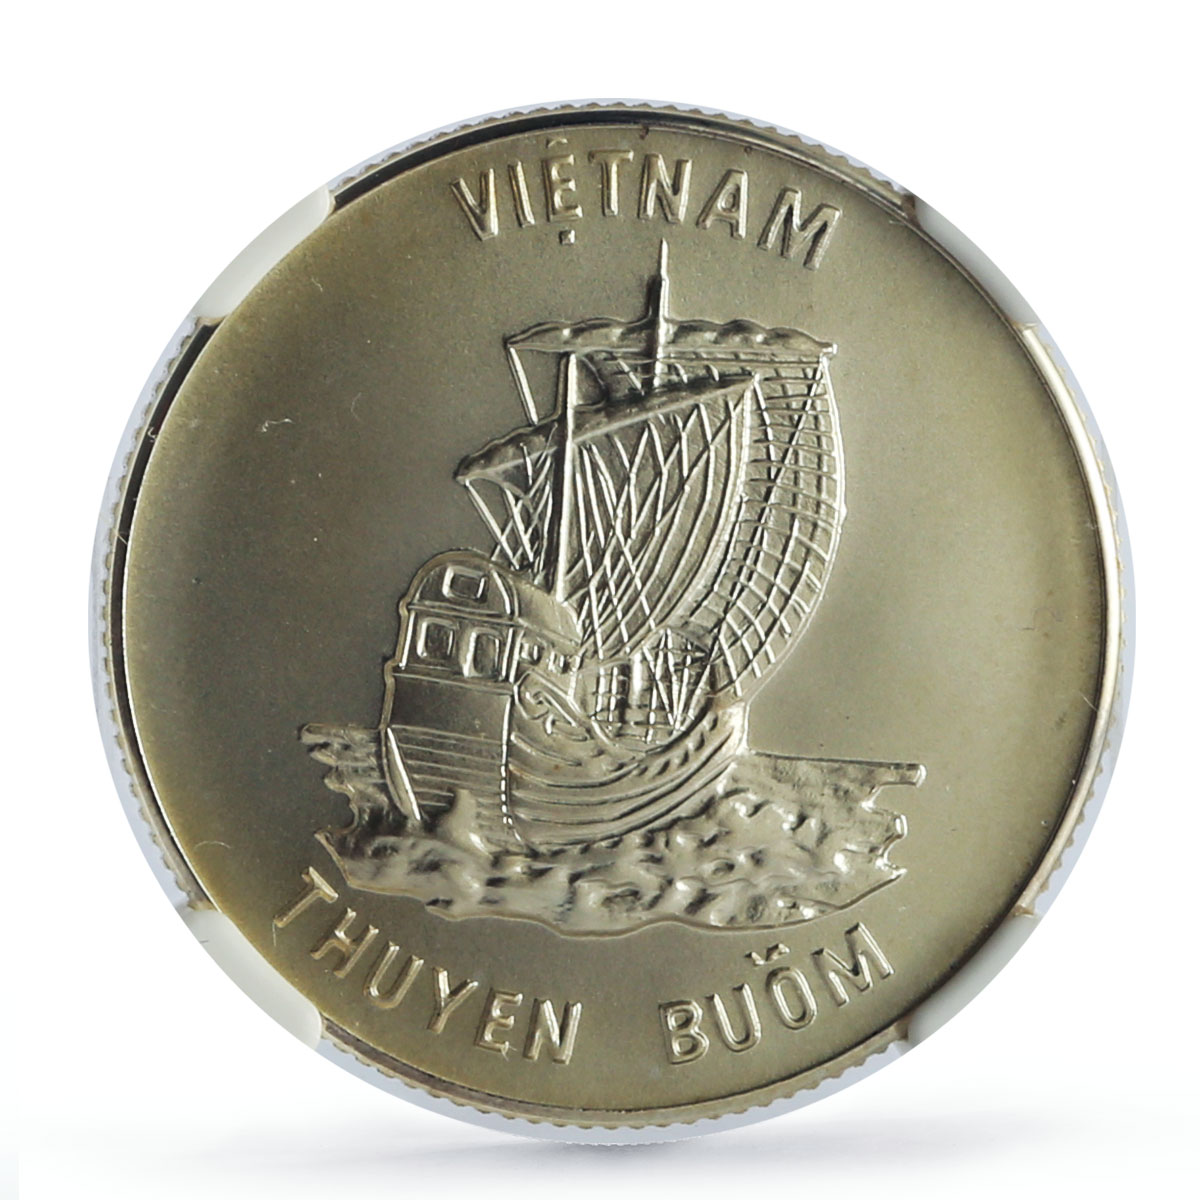 Vietnam 100 dong Seafaring Sailing Junk Ship Clipper MS68 NGC silver coin 1986